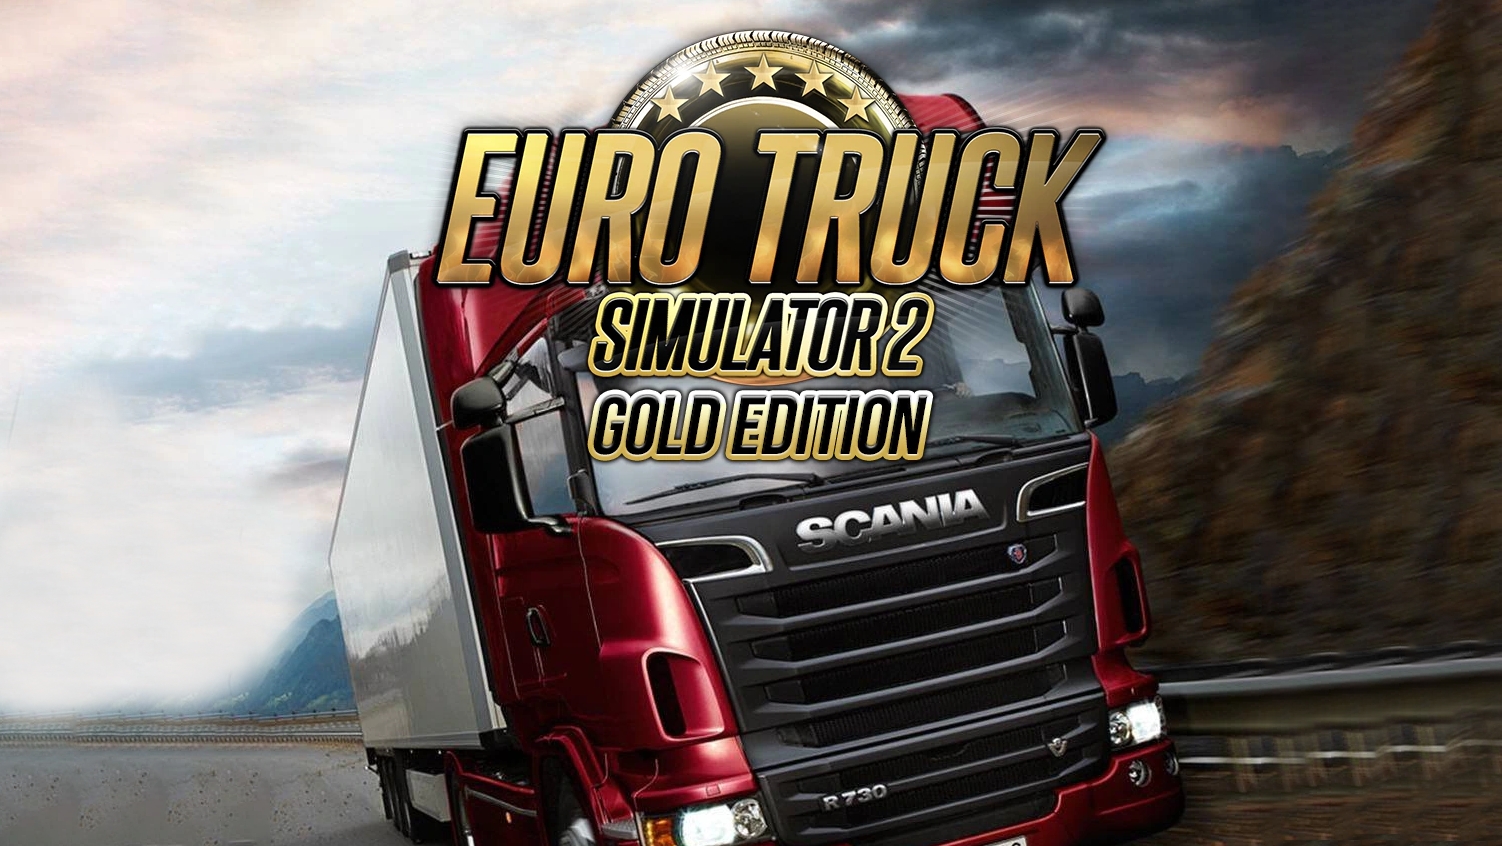 euro truck simulator 2 gold edition includes